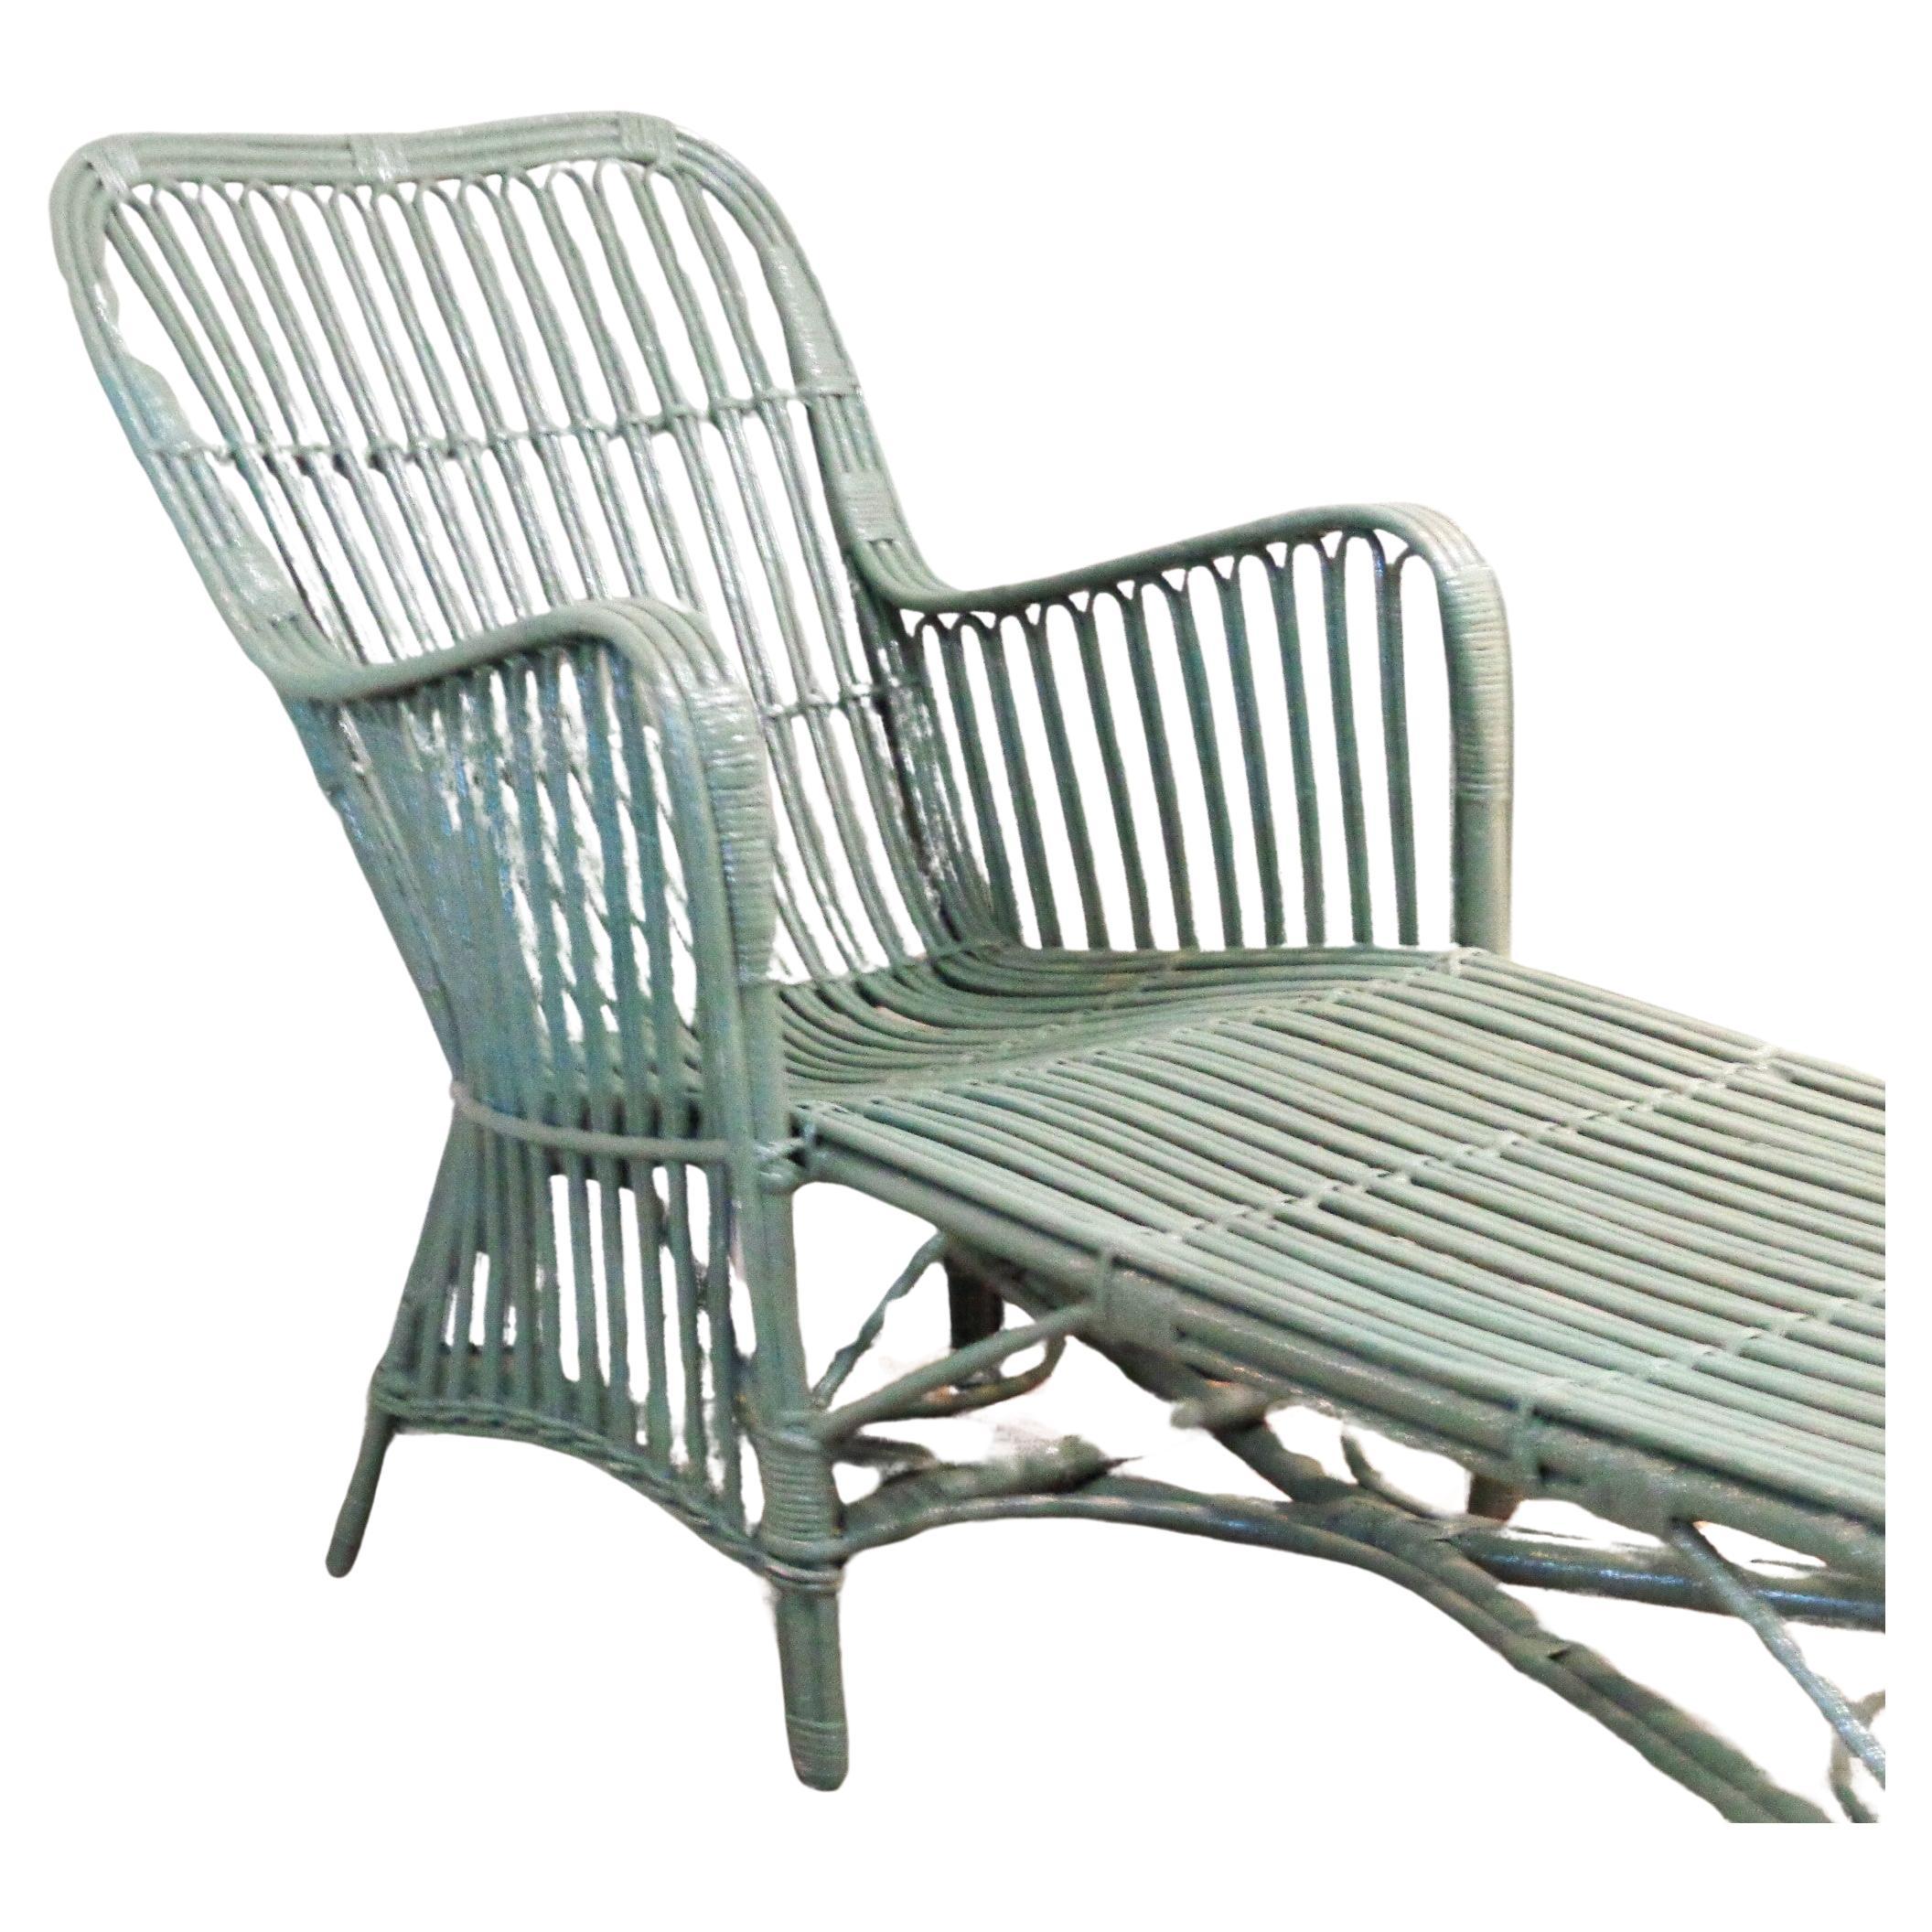 Chaise longue antique en rotin tressé à la main, surface peinte en vert sauge pâle brillant. Attribué à Heywood-Wakefield. Circa 1930. Dimensions sans les coussins - 60